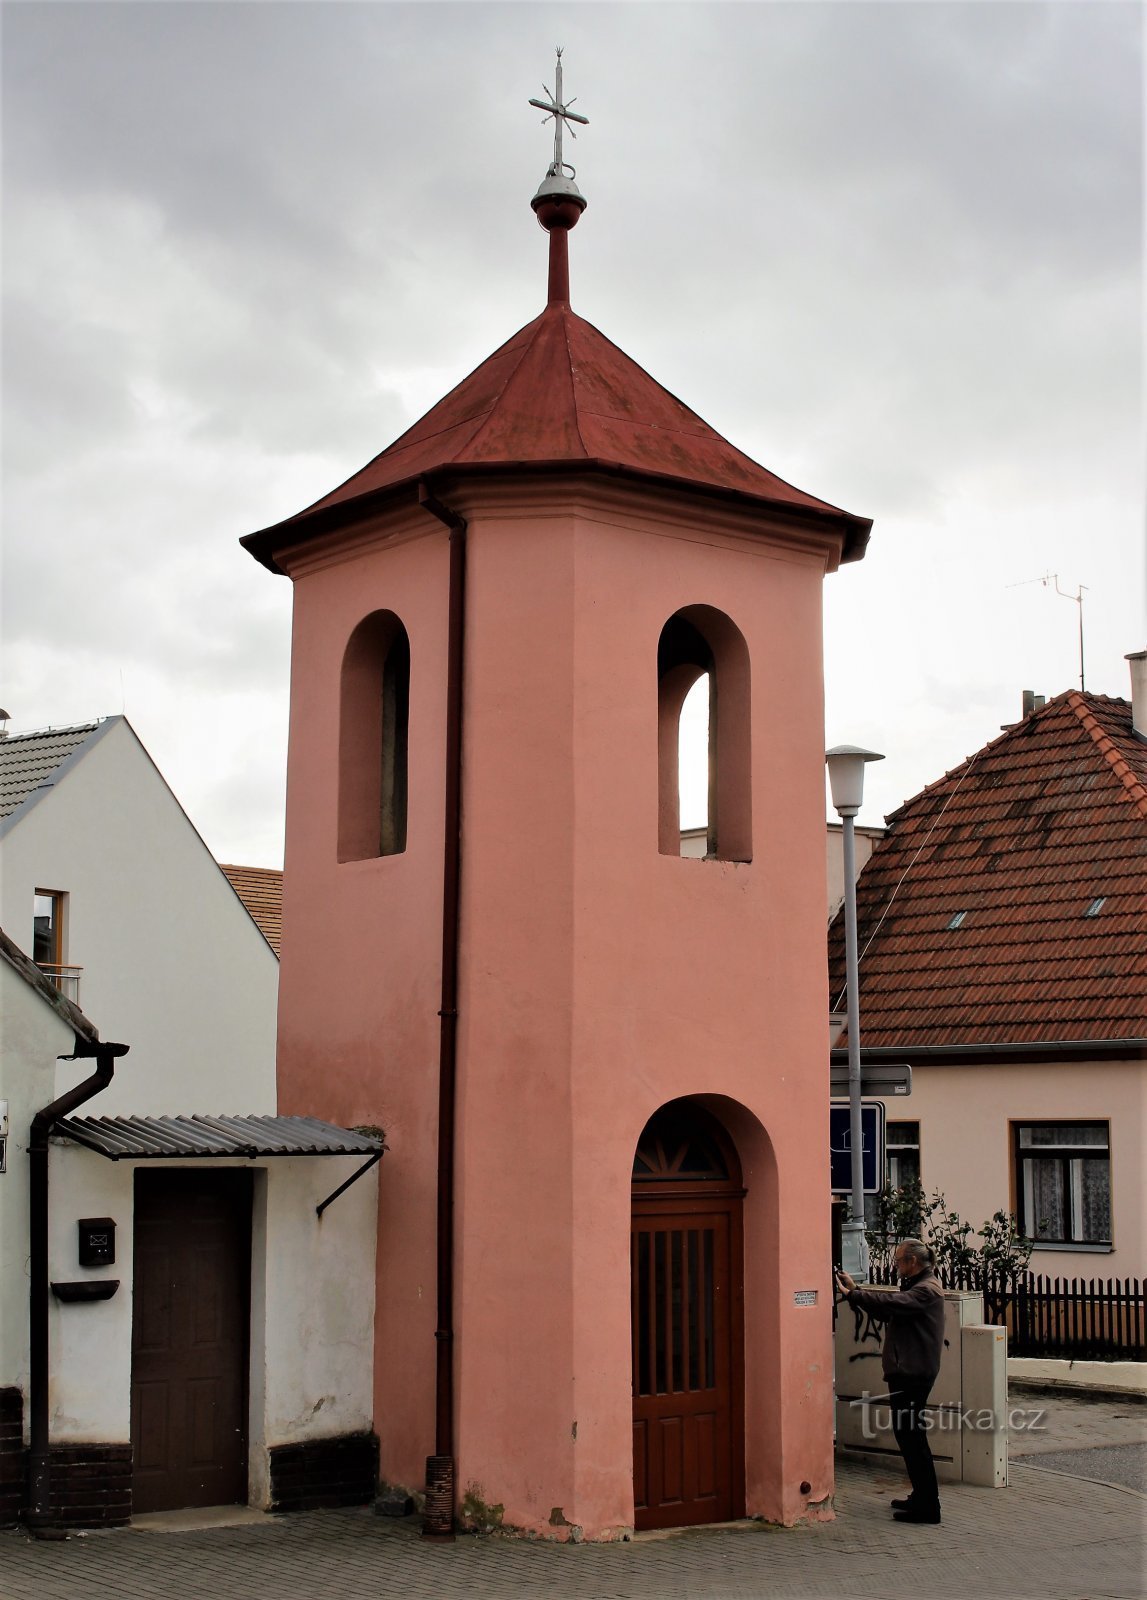 Brno-Medlánky - tháp chuông